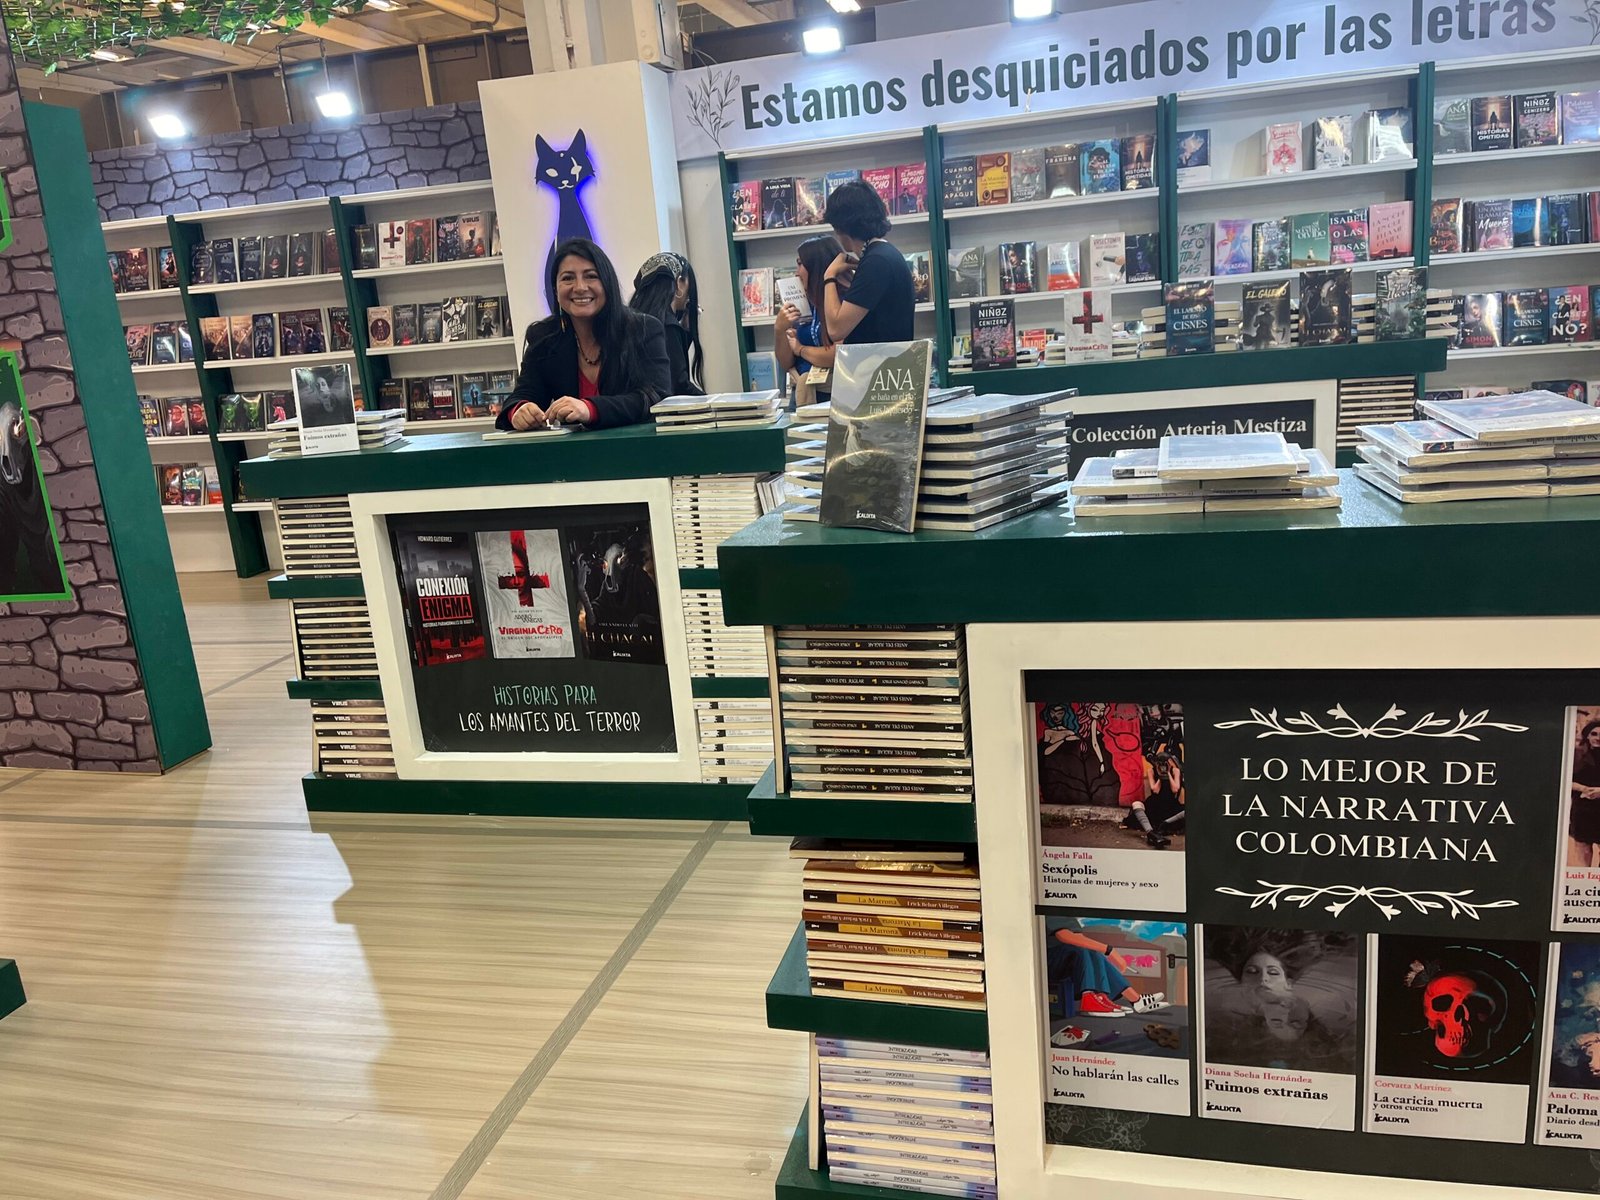 La foto fue tomada por Jaime Cortés. Stand de Calixta Editores en la FILBo 2014. Diana Socha Hernández, autora de Fuimos Extrañas en el centro con los libros y lista para firmar los ejemplares.